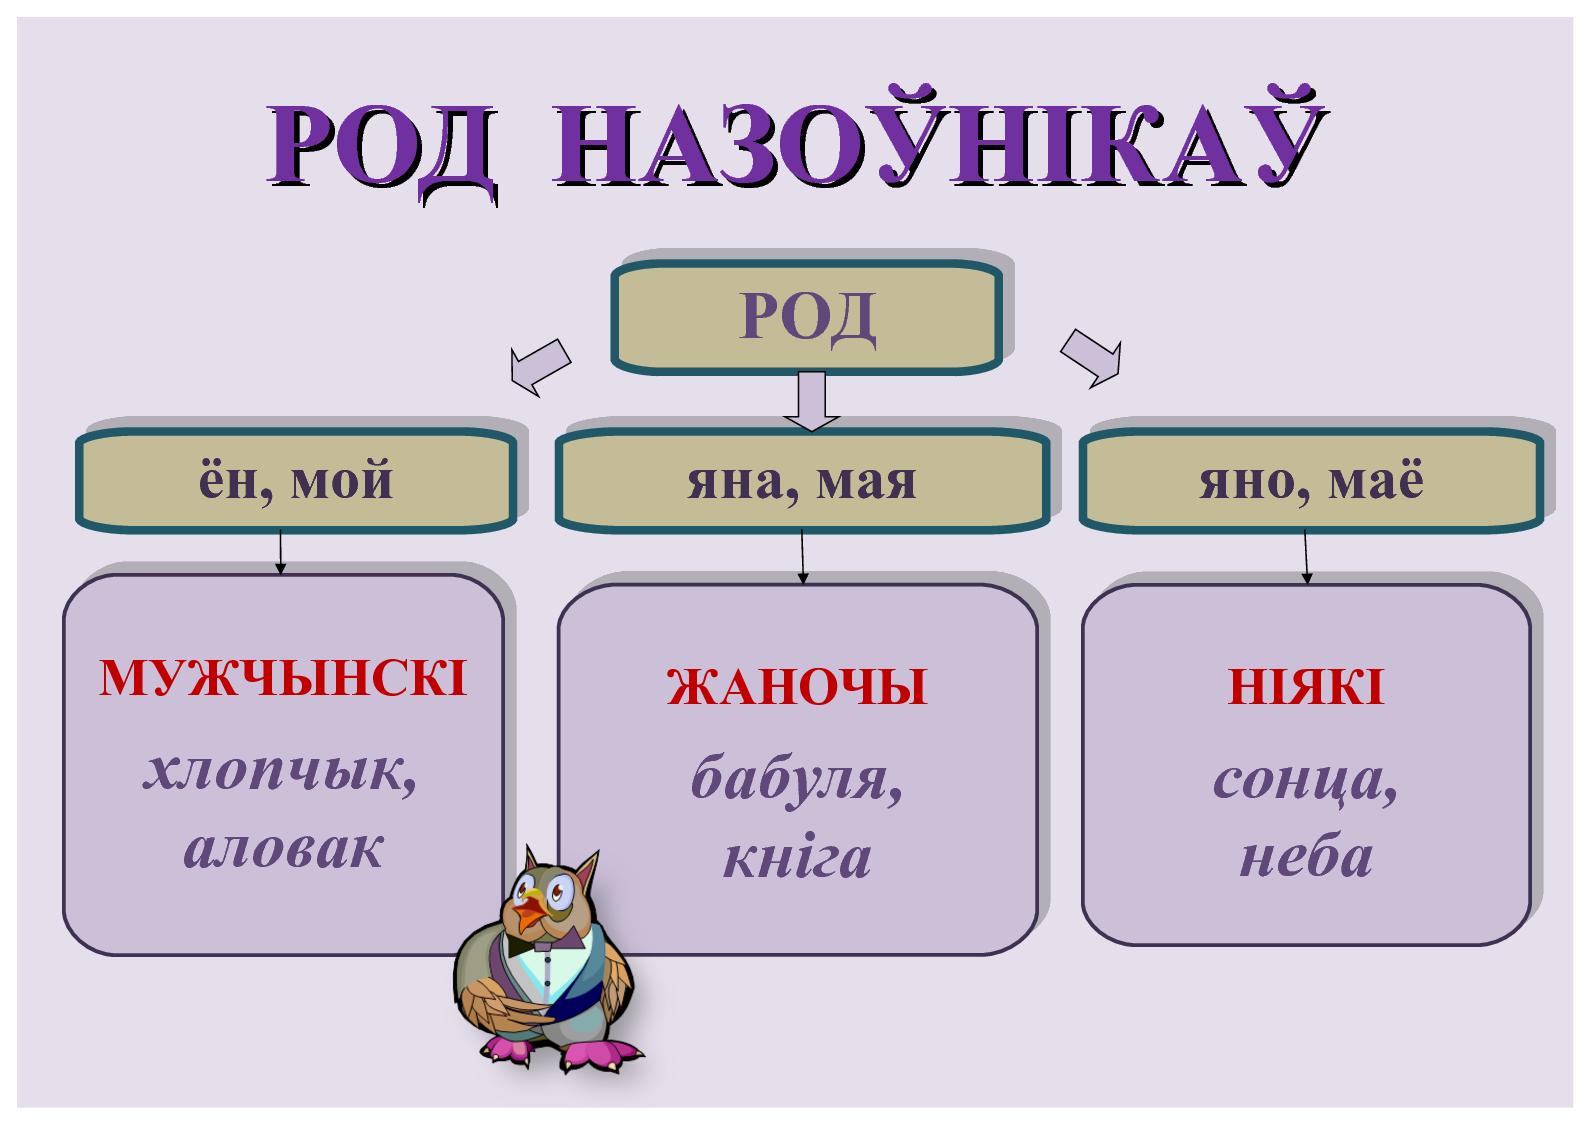 члены сказа в белорусском языке фото 25